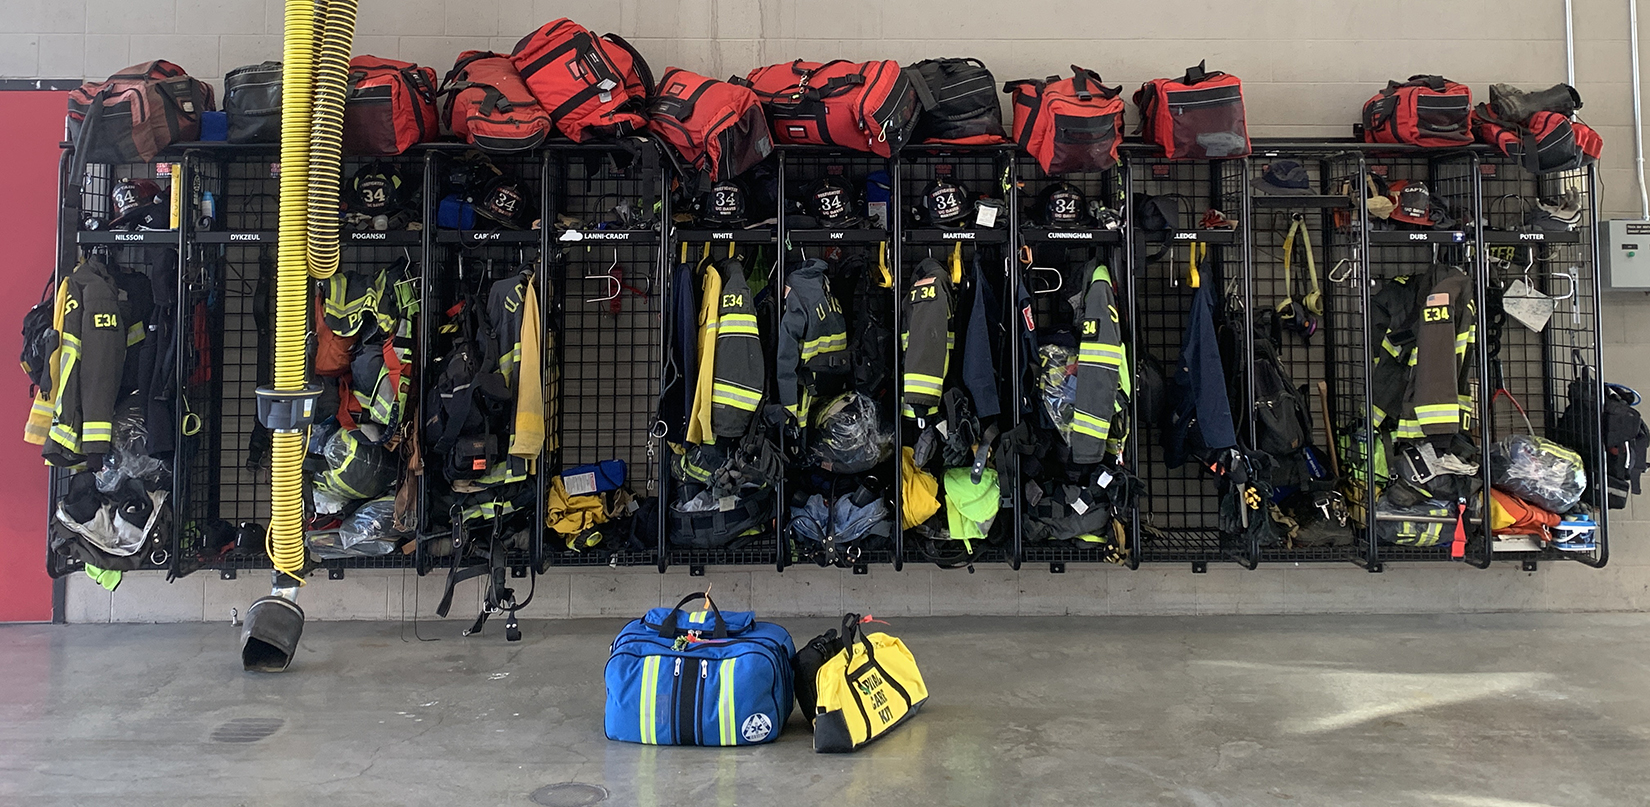 Racks of equipment in the firehouse